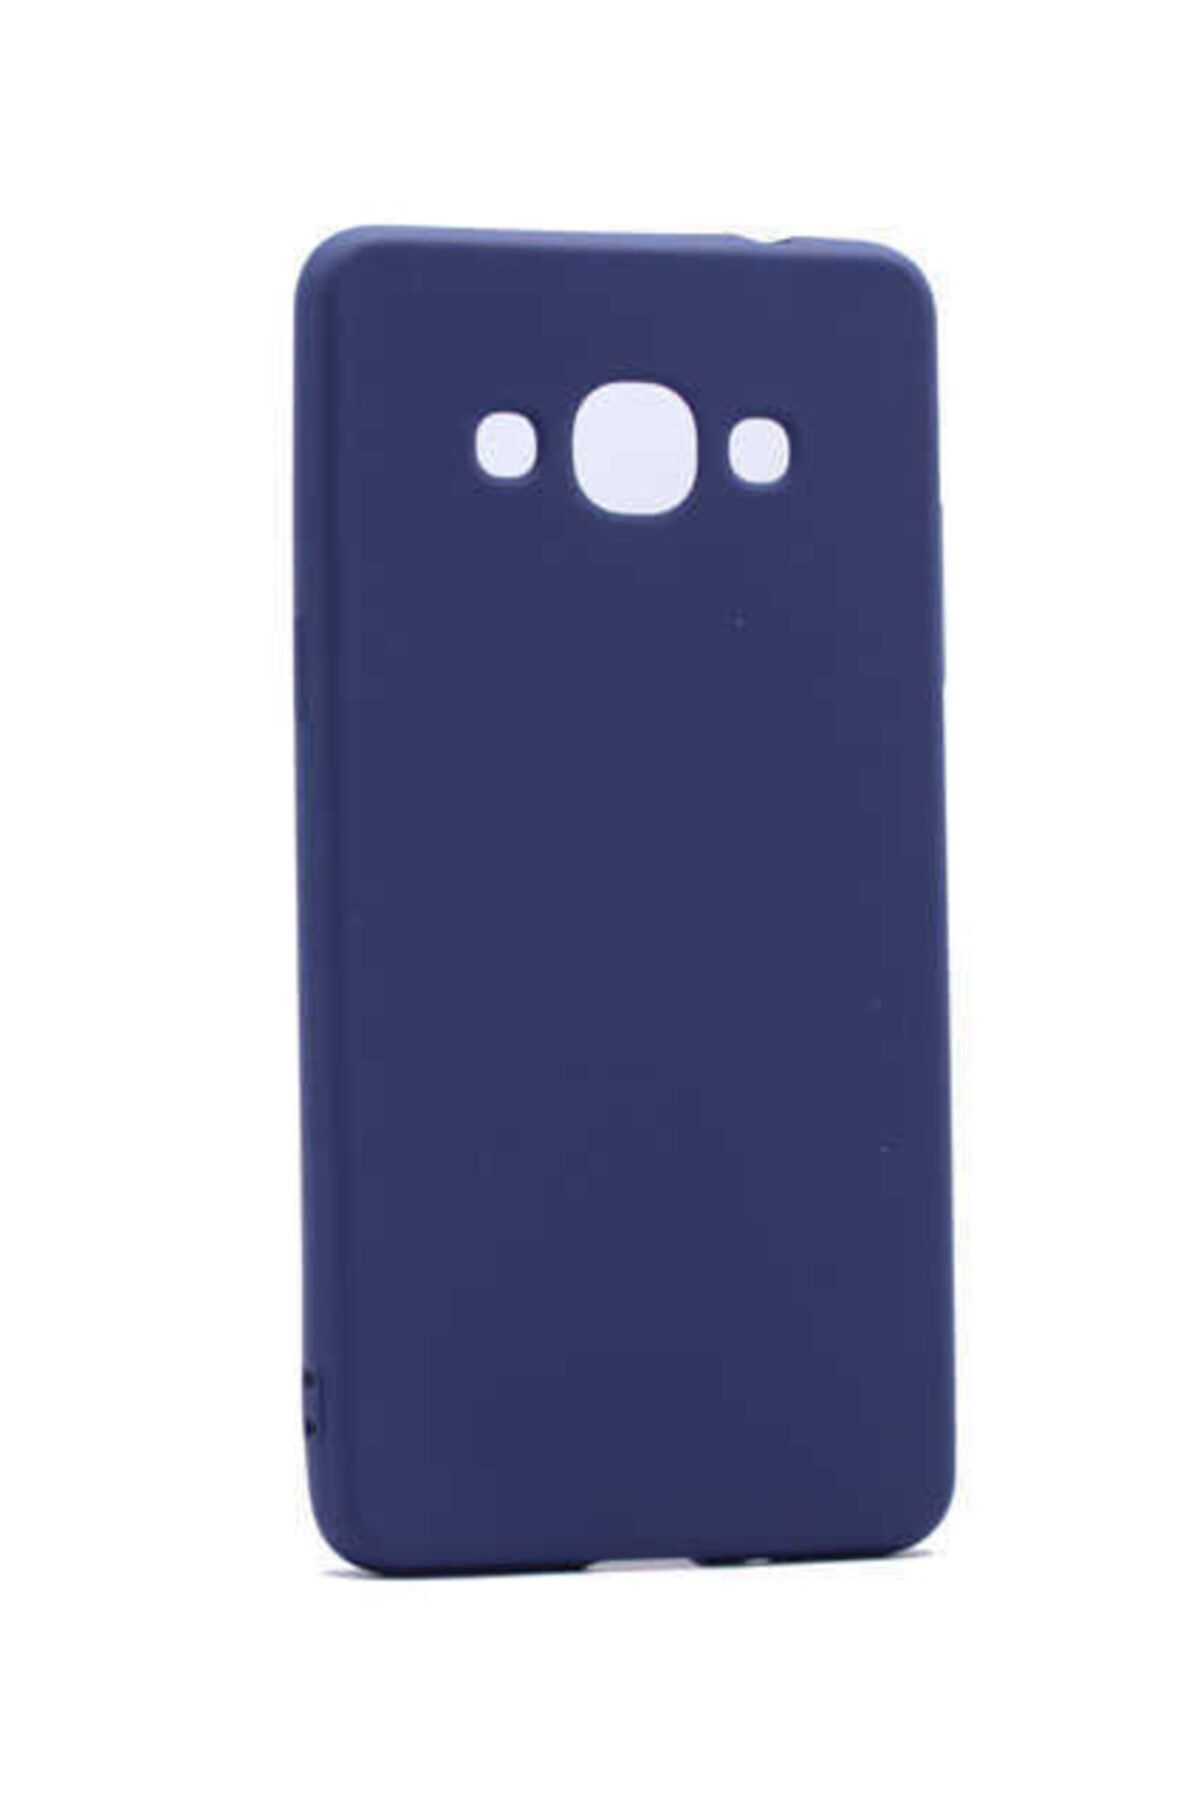 İncisoft Galaxy J3 Uyumlu Ince Yumuşak Soft Tasarım Renkli Silikon Kılıf